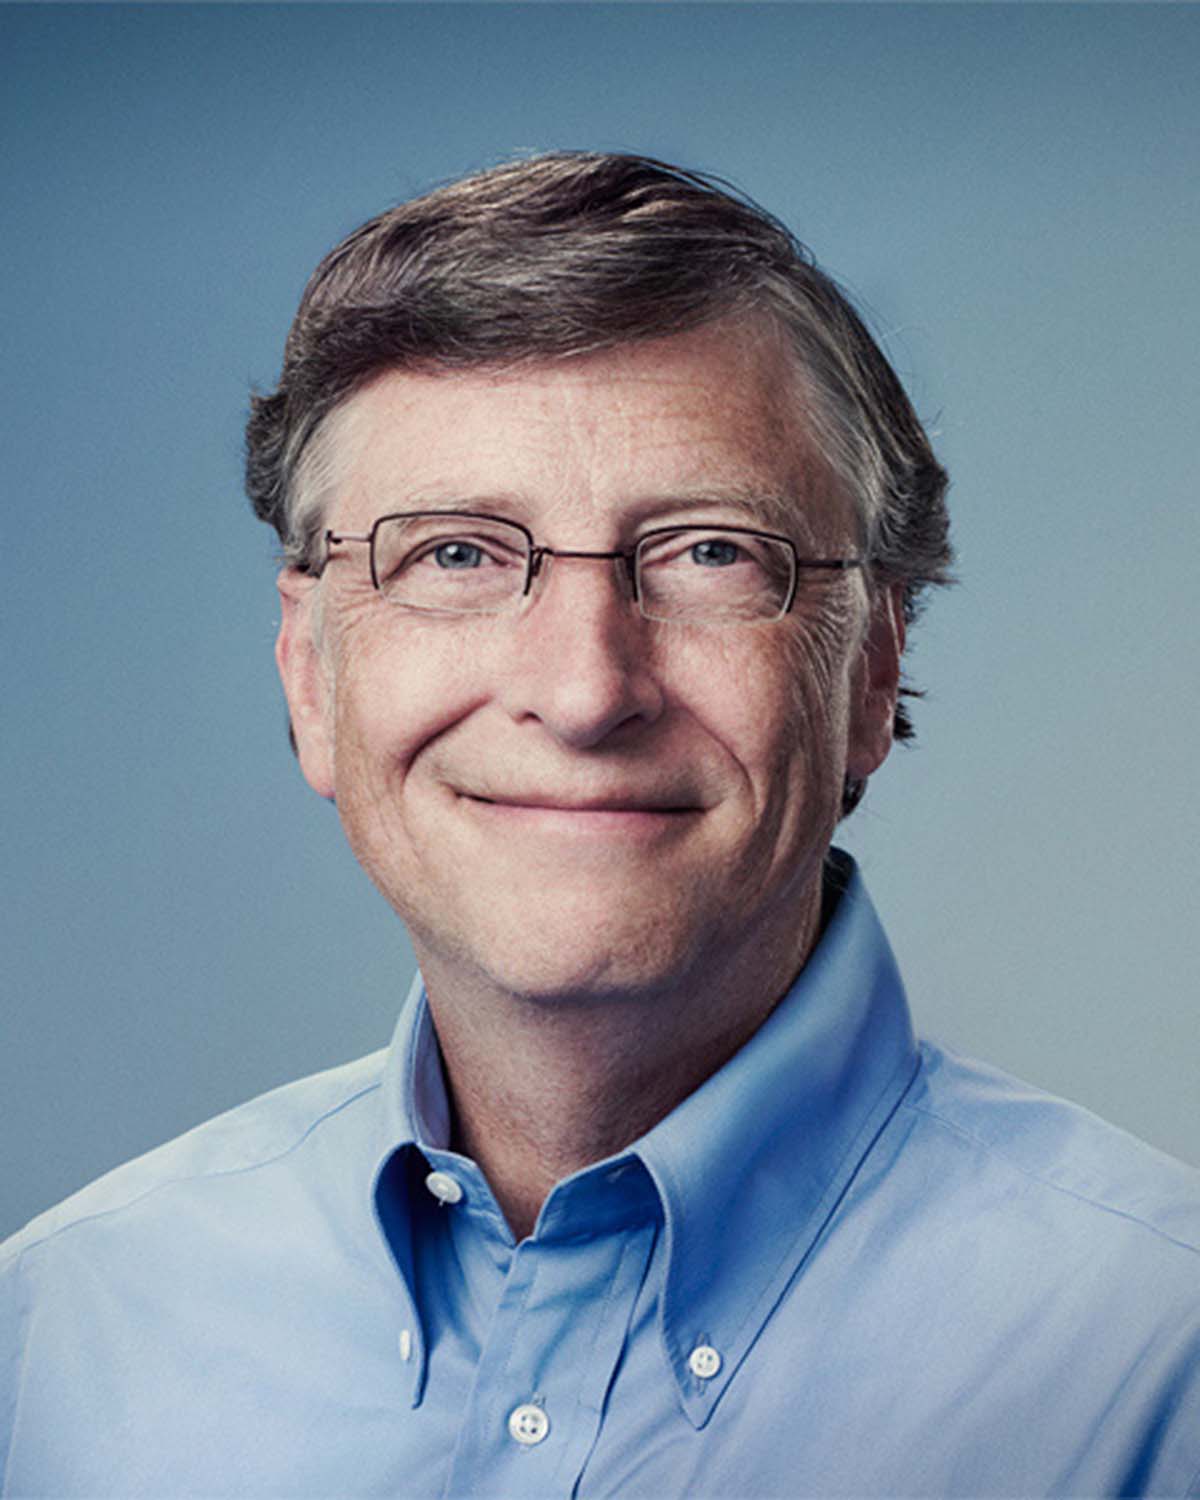 Билл Гейтс в оправе Lindberg